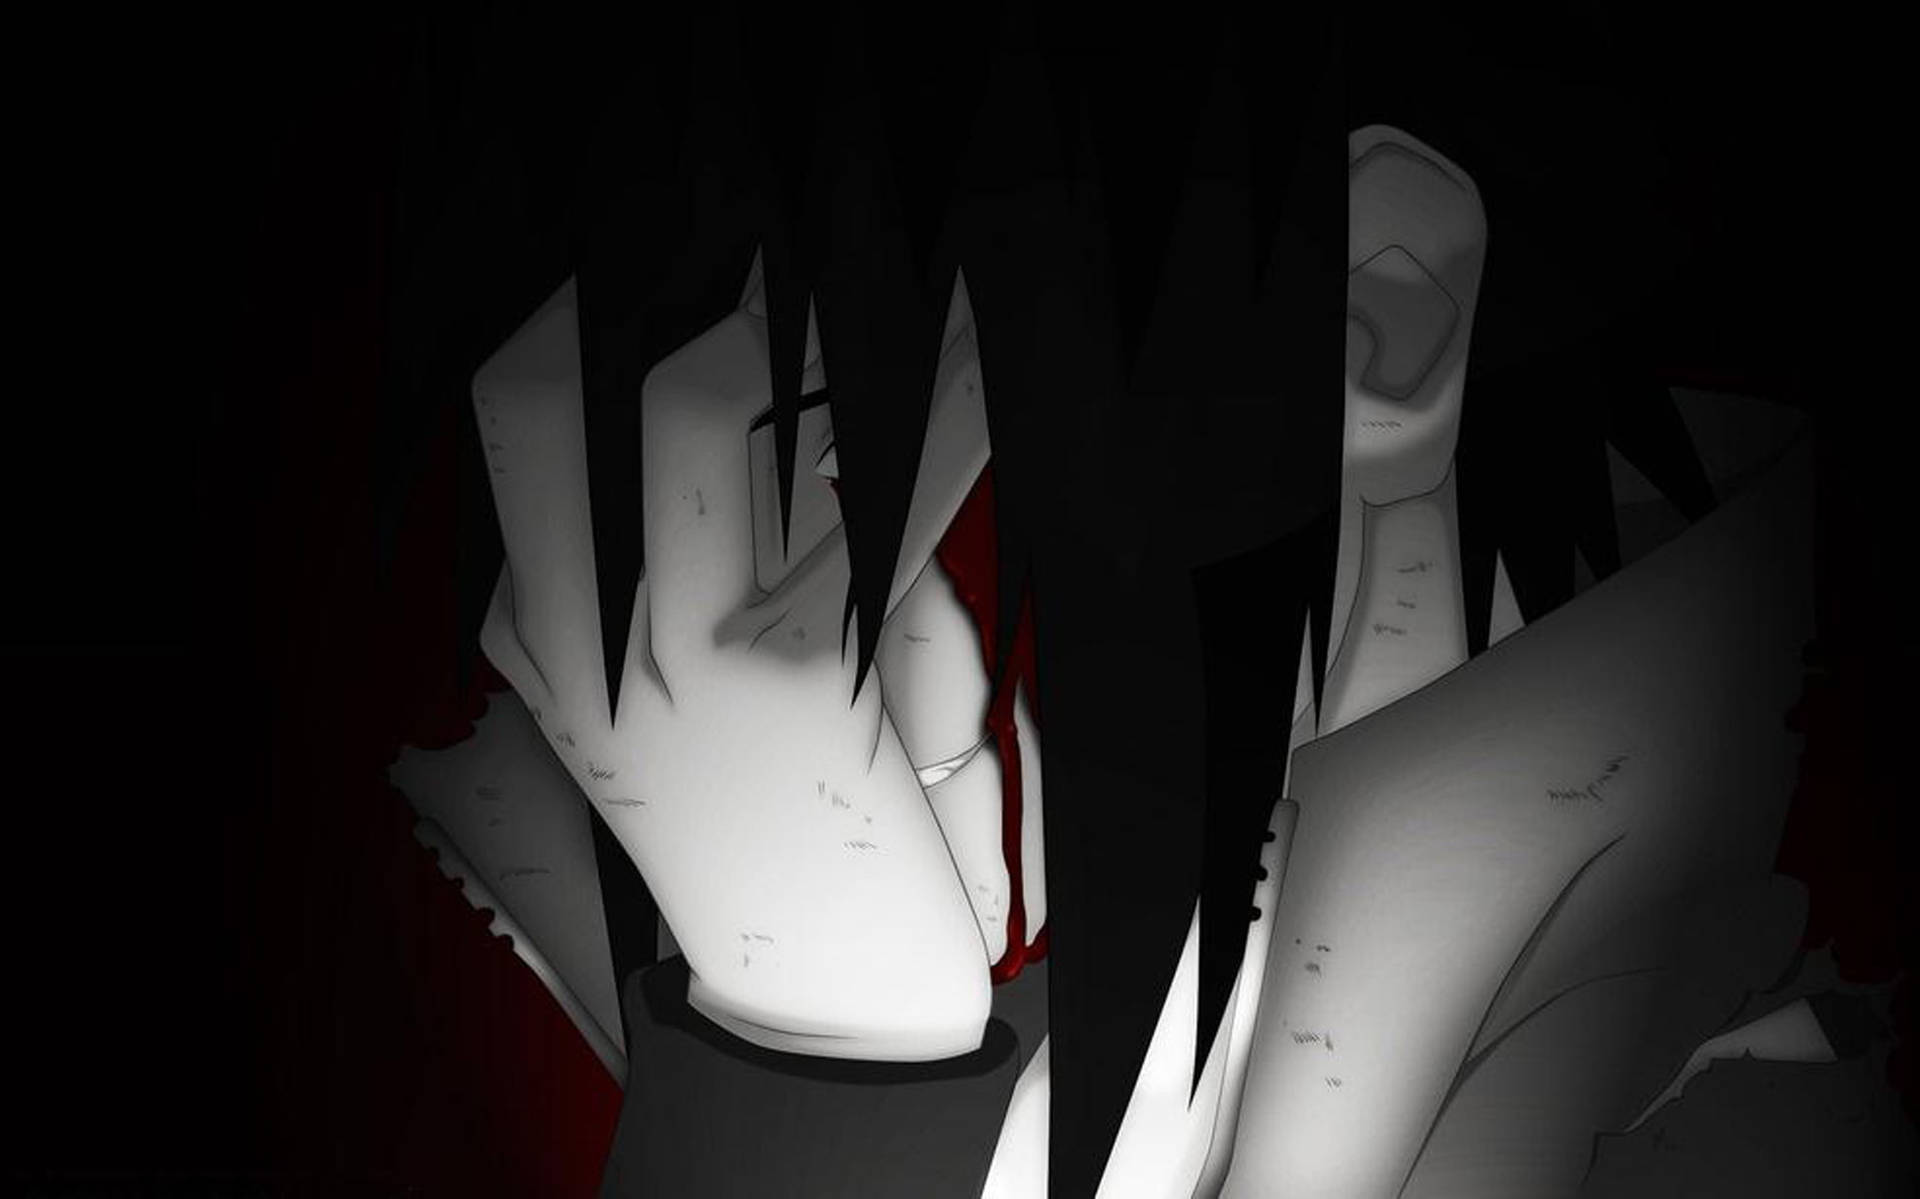 An intense black and white anime boy. Wallpaper